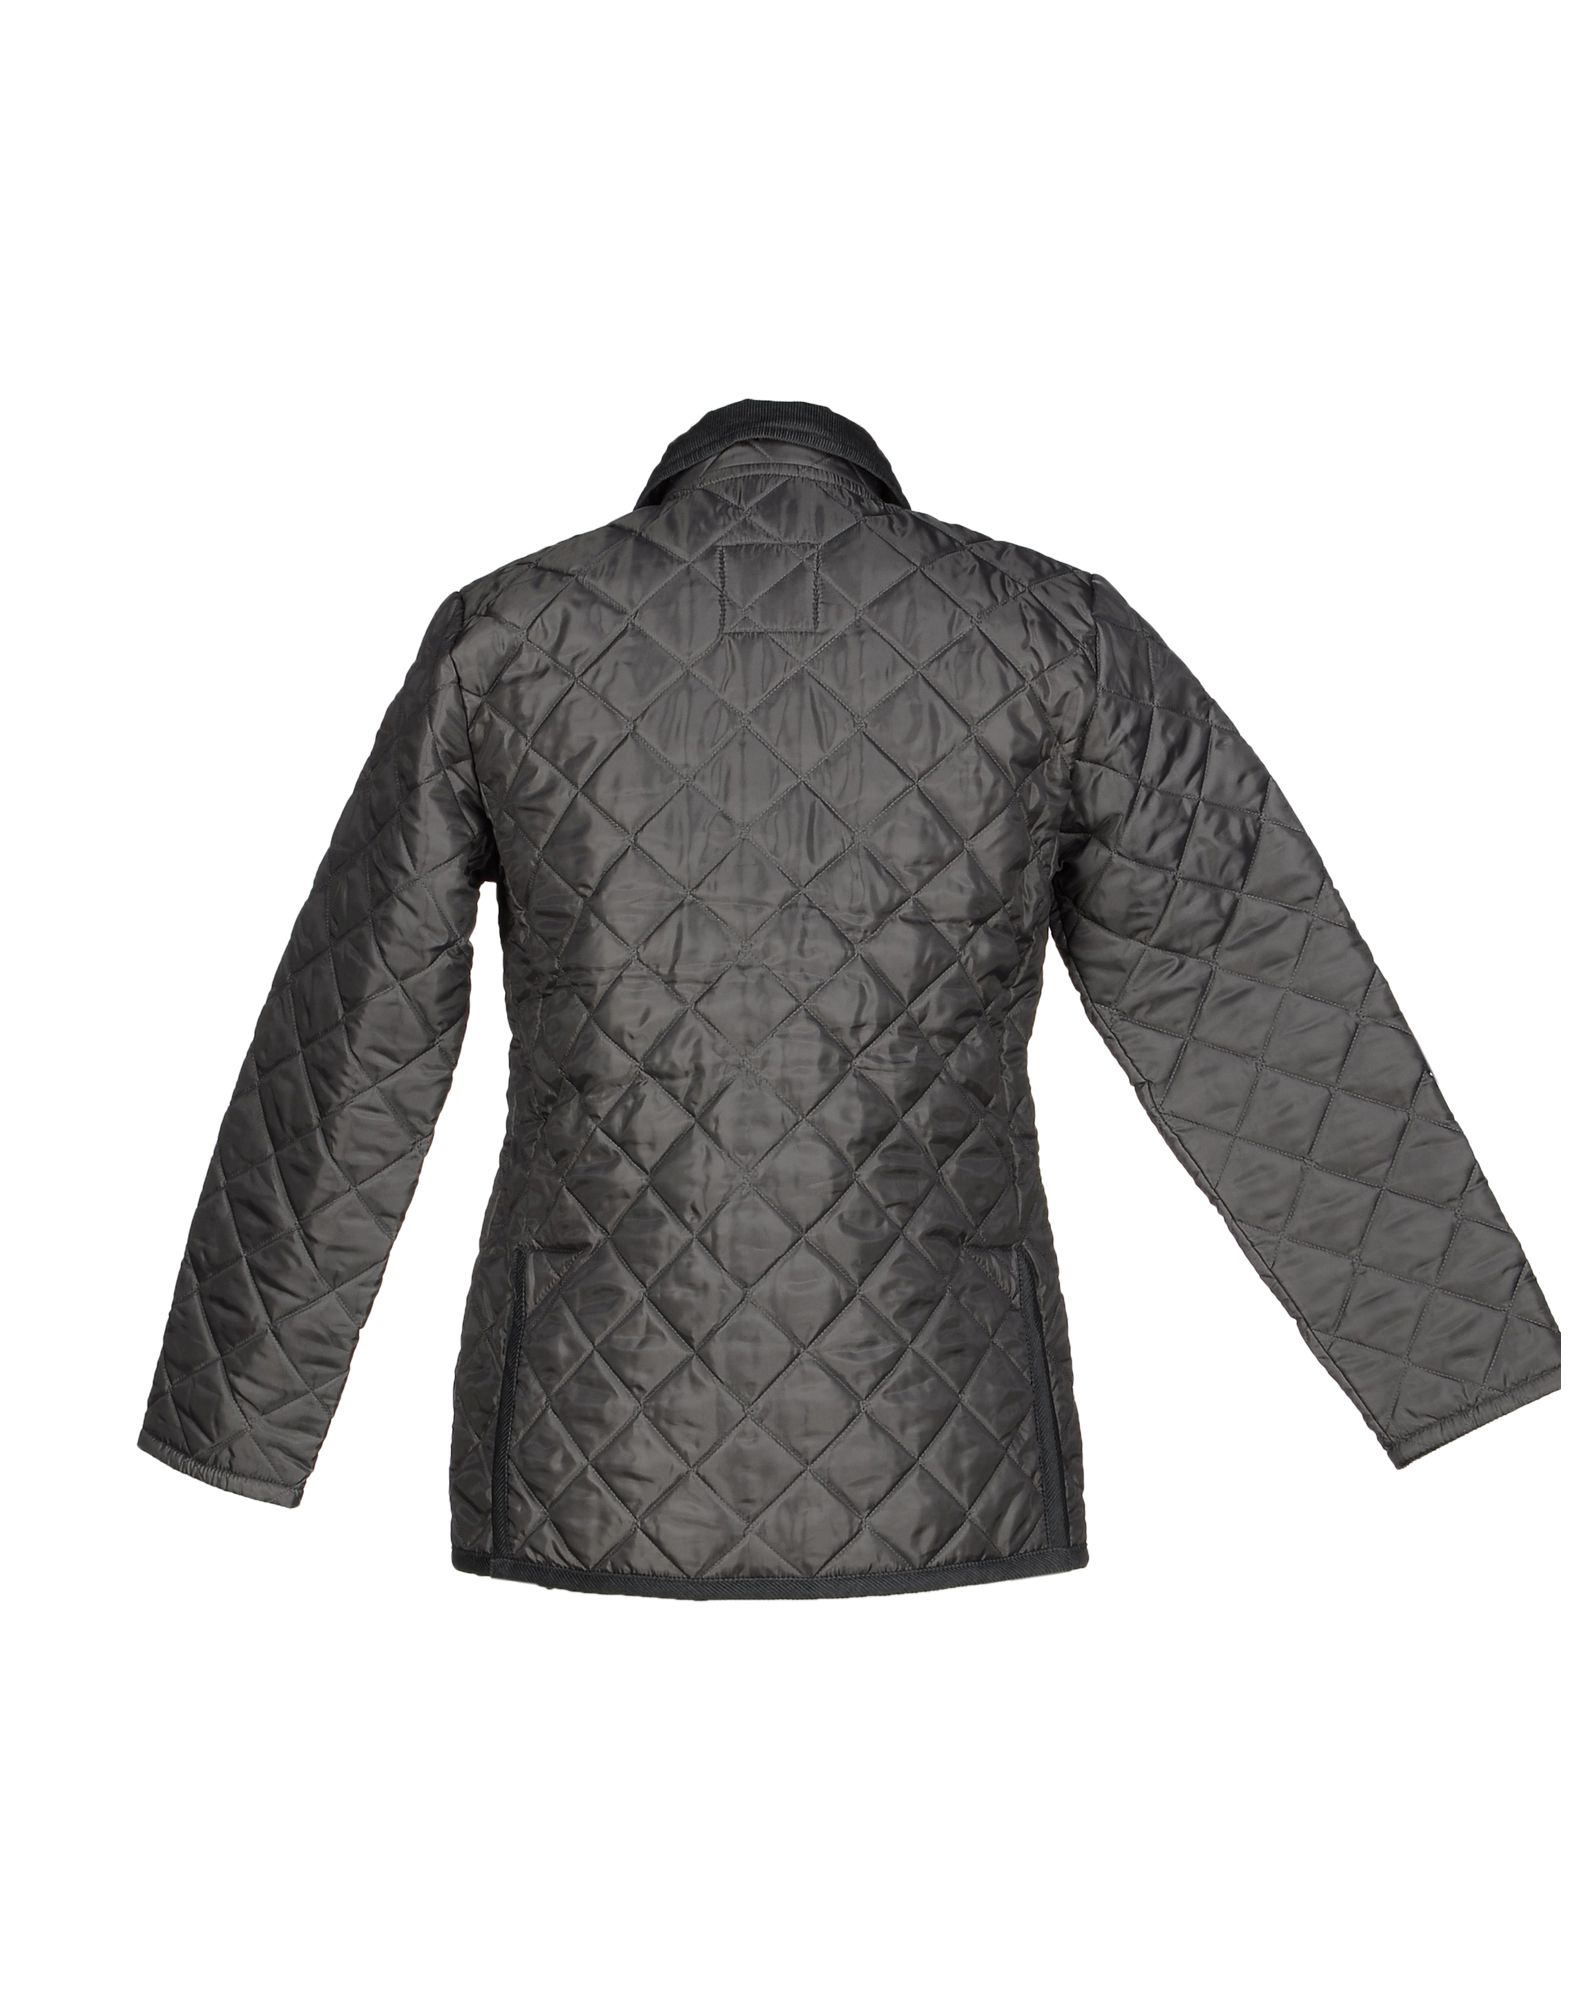 Lyst - Lavenham Jacket in Gray for Men